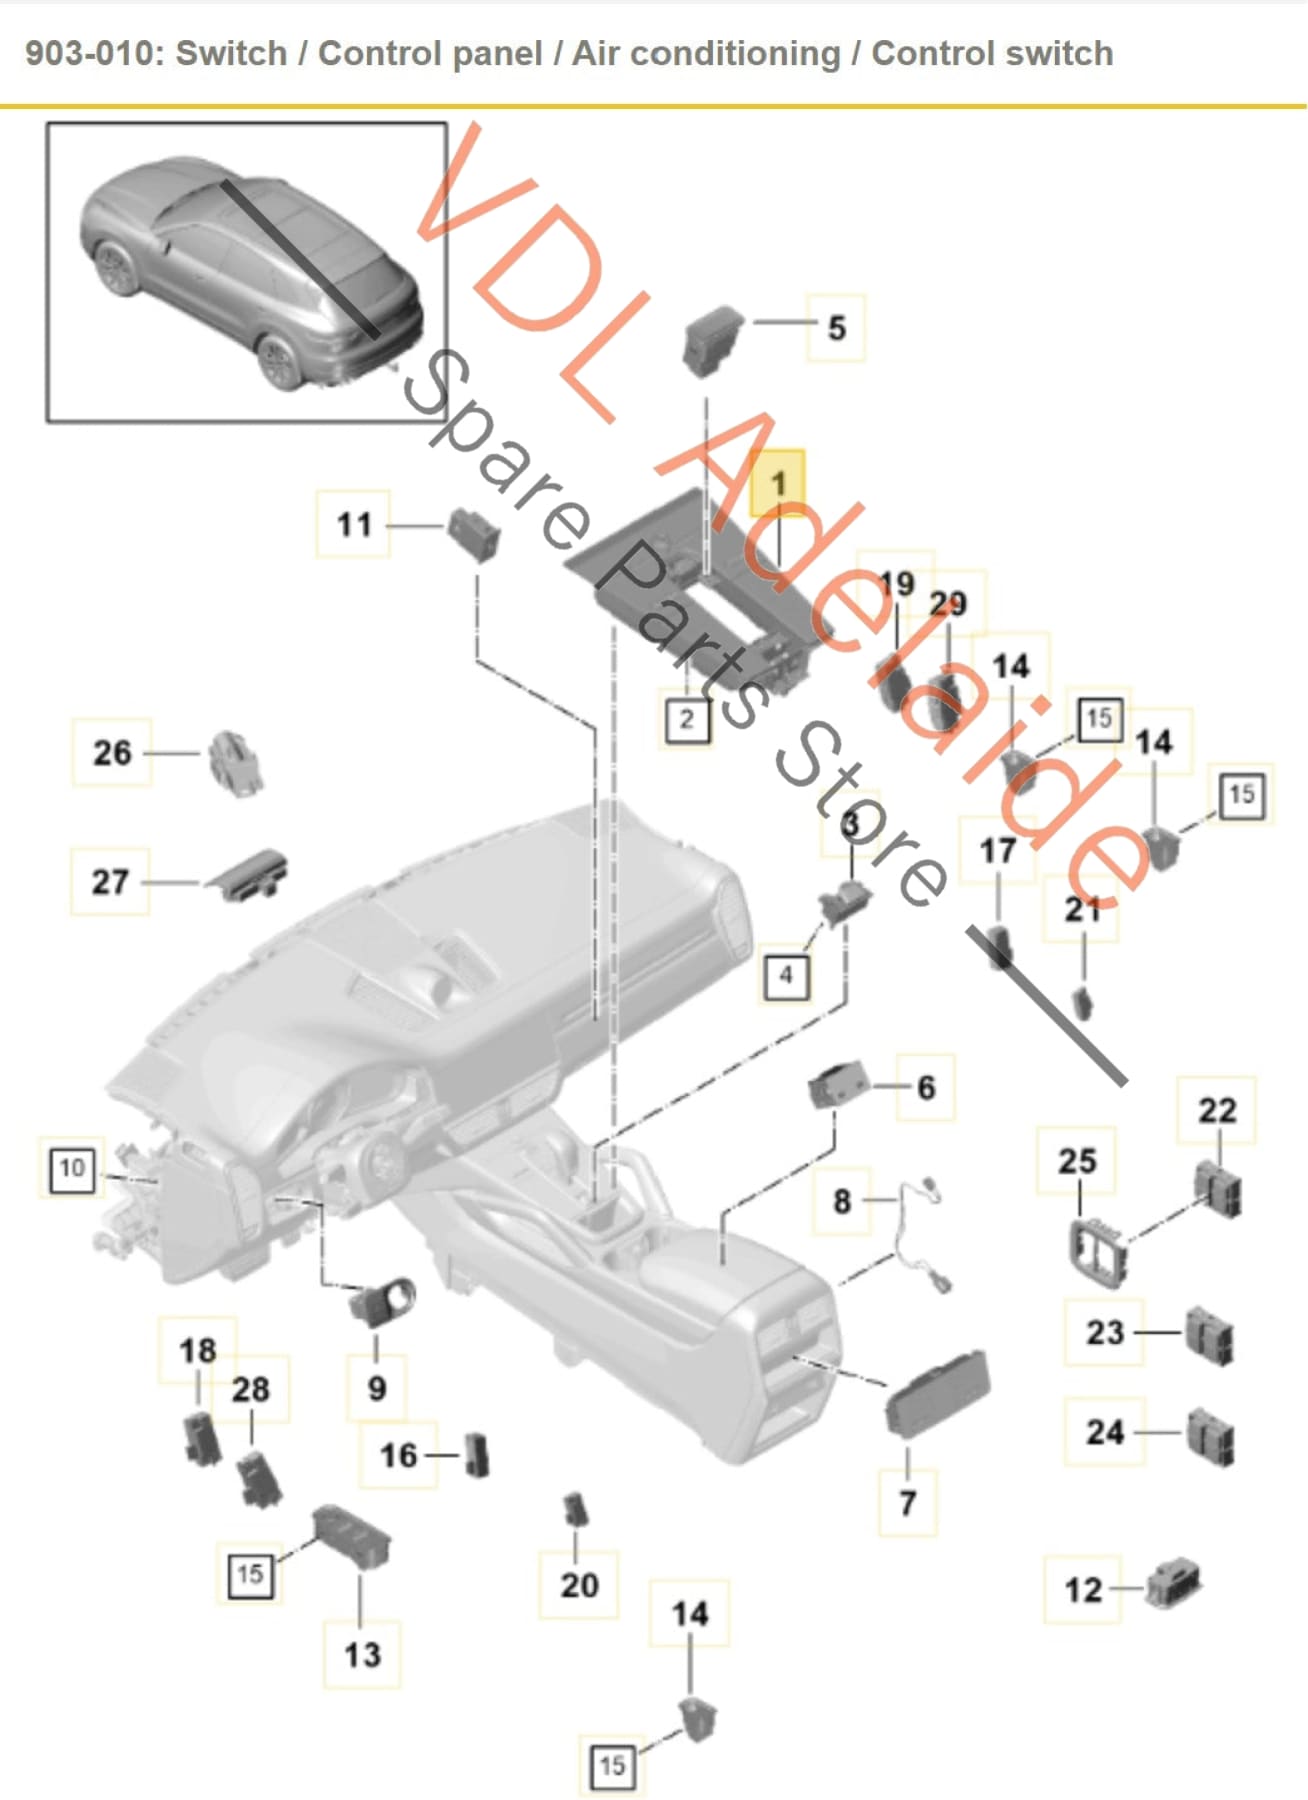 9Y0919610L 9Y0919610MOV3 9Y0919610N Porsche Cayenne E3 9YA 9YB Centre Dash Console Control Switch Panel for Air Conditioning 9Y0919610M OV3 9Y0919610L 9Y0919610N